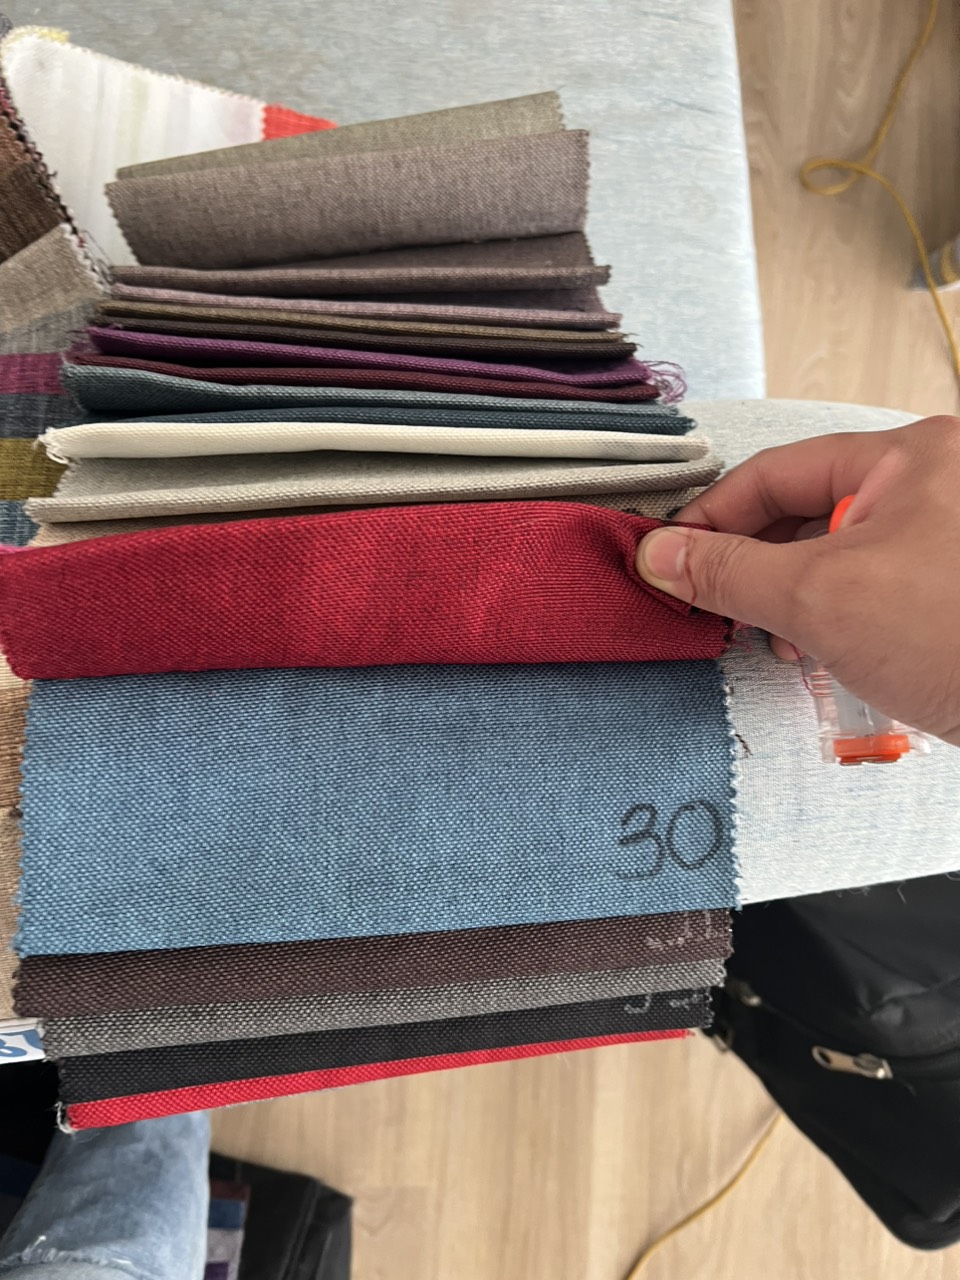 Fabric samples for sofa reupholstering